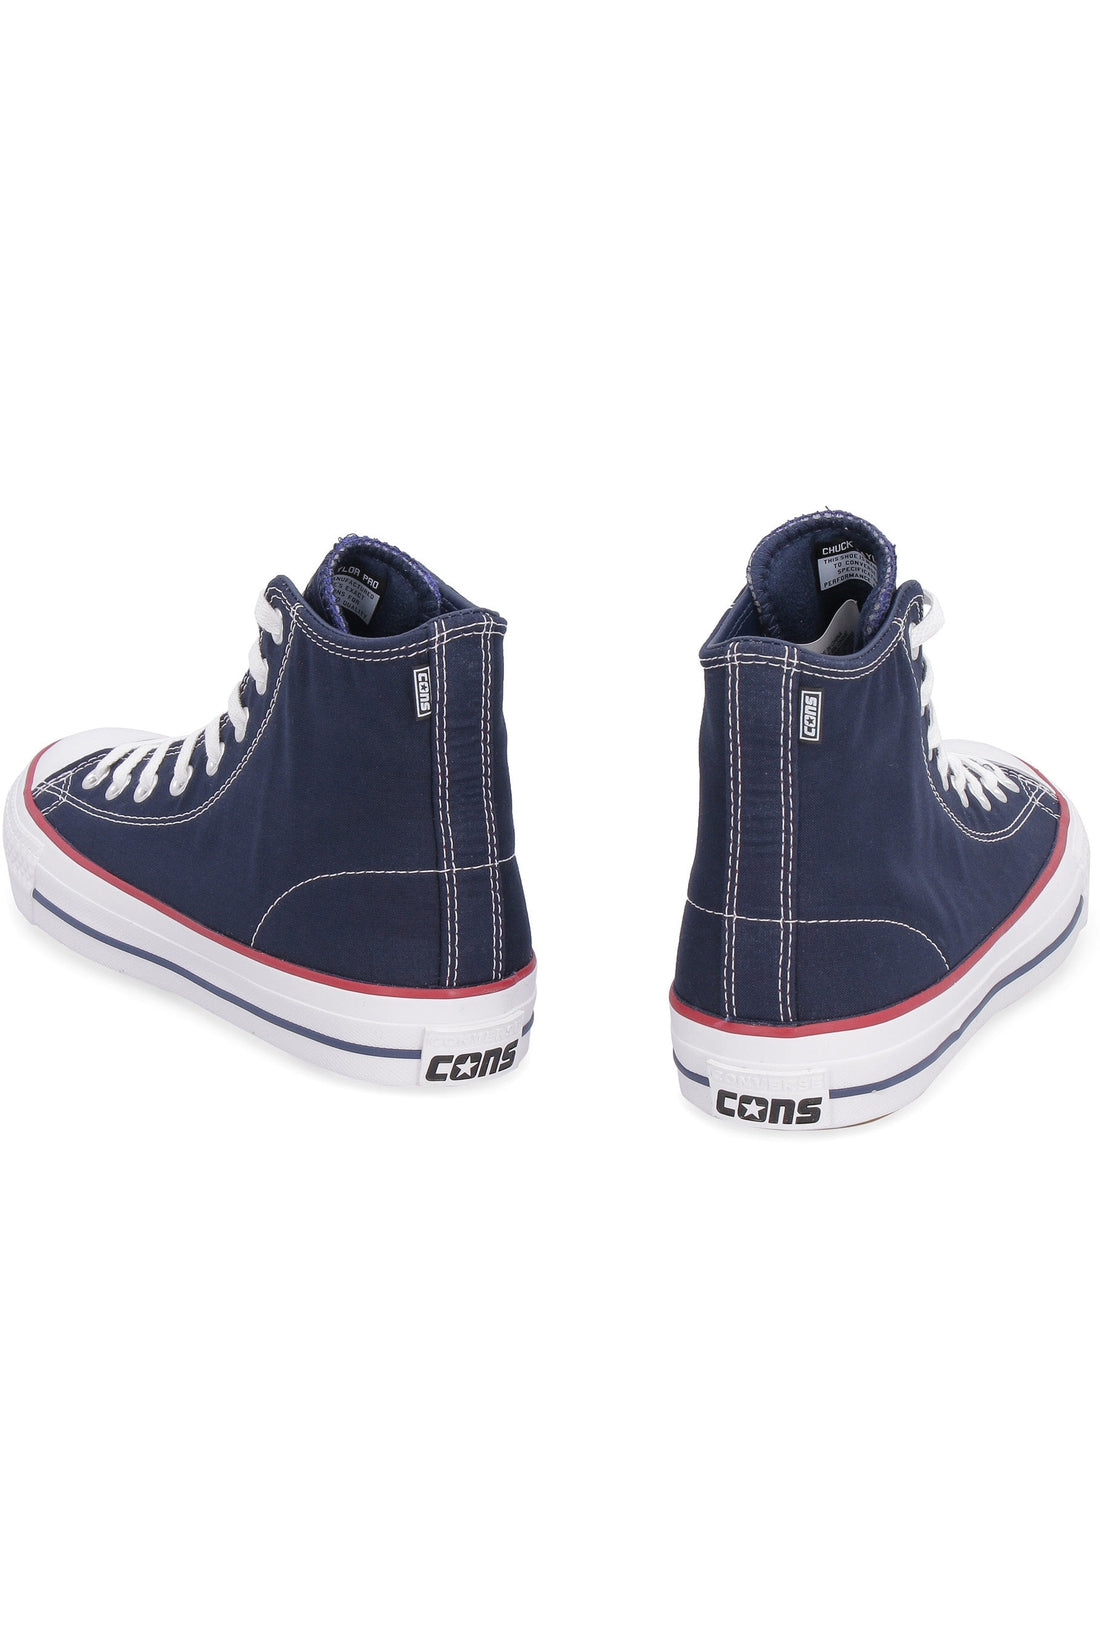 Converse-OUTLET-SALE-CTAS Pro canvas high-top sneakers-ARCHIVIST